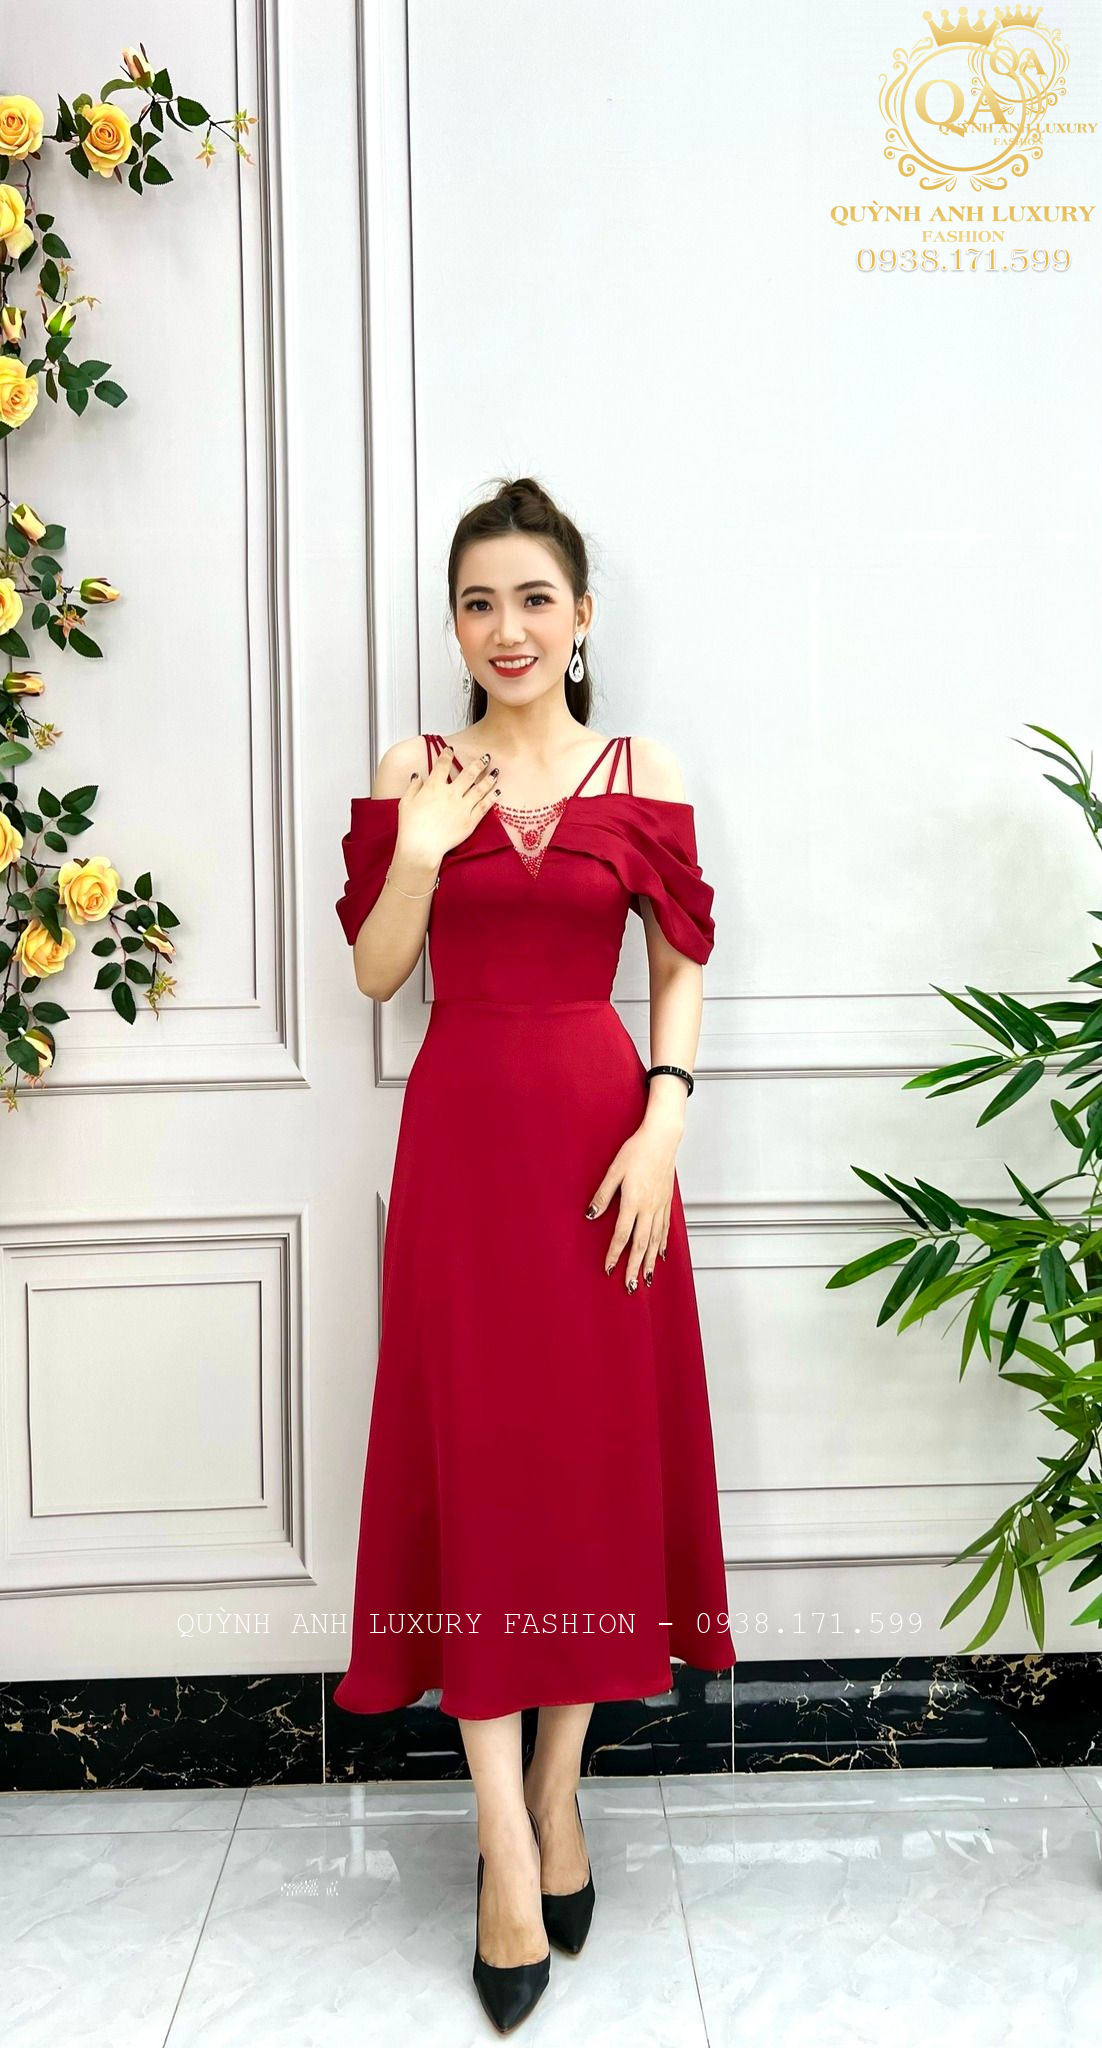 Top 5 Shop bán váy Tutu đẹp nhất TP. Hồ Chí Minh - Top10tphcm